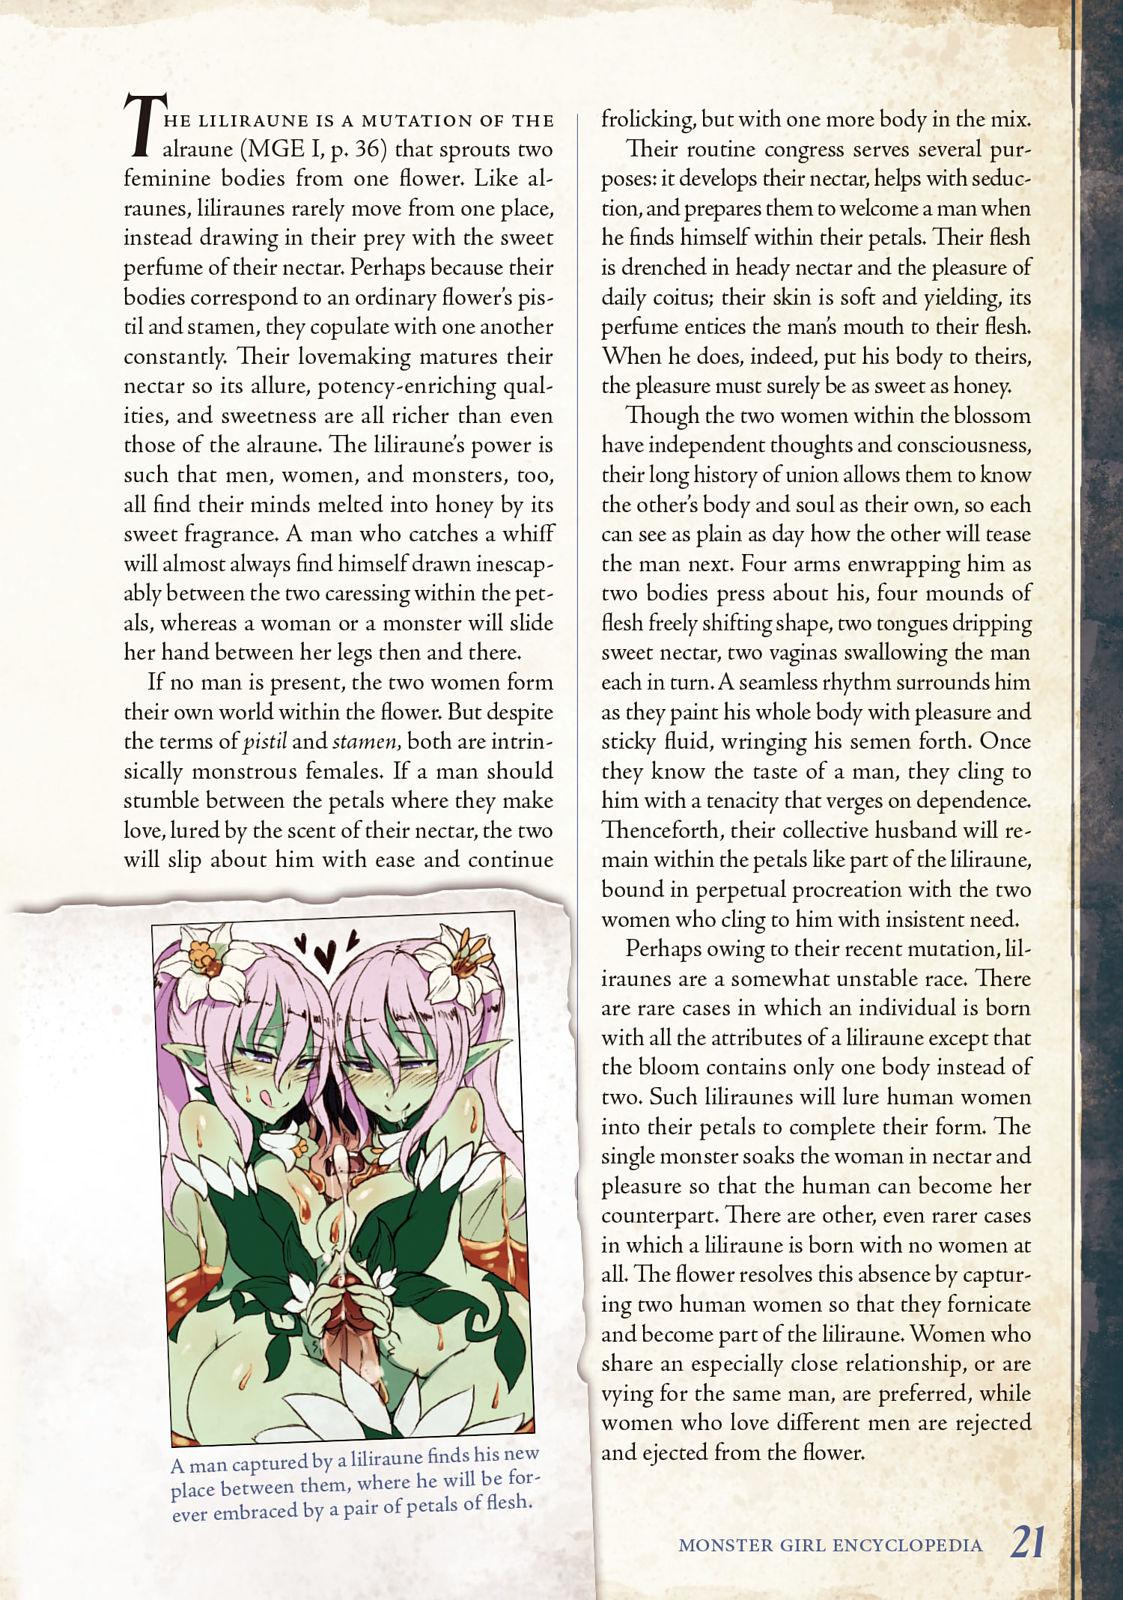 Monster Girl Encyclopedia Vol. 2 21